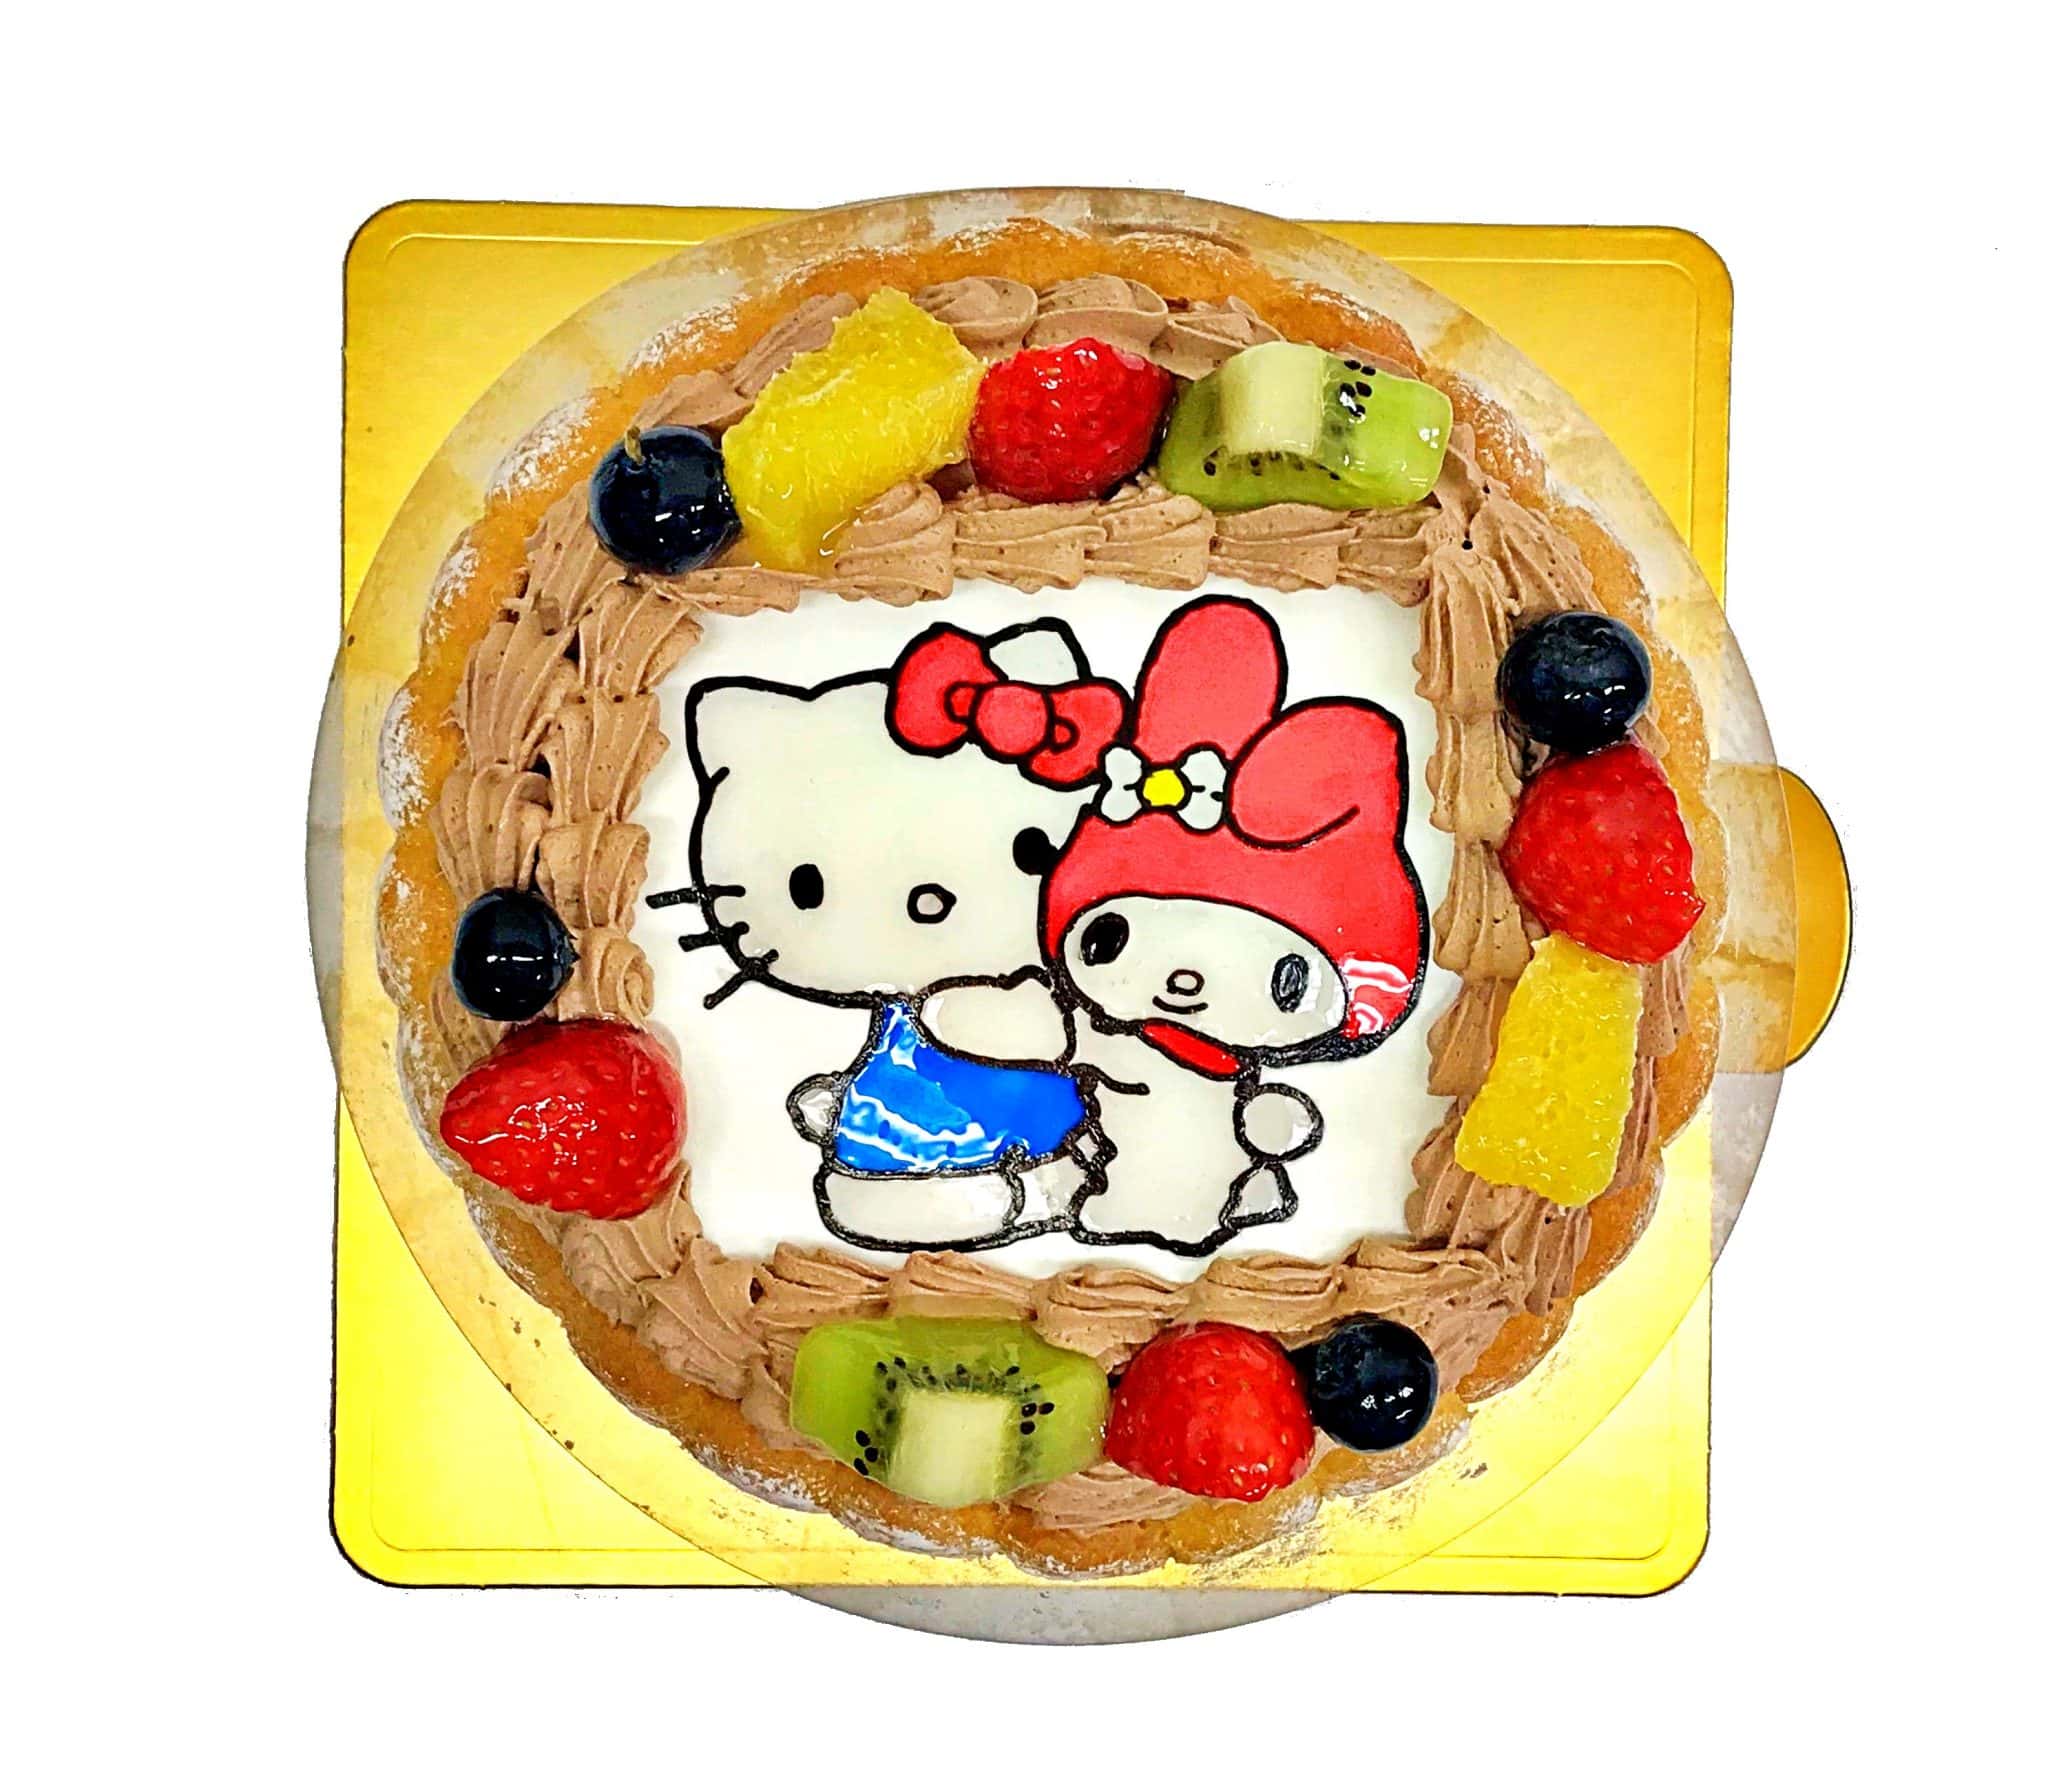 キティちゃんとマイメロちゃん Sサイズ キャラクターケーキ通販fundeco ファンデコ